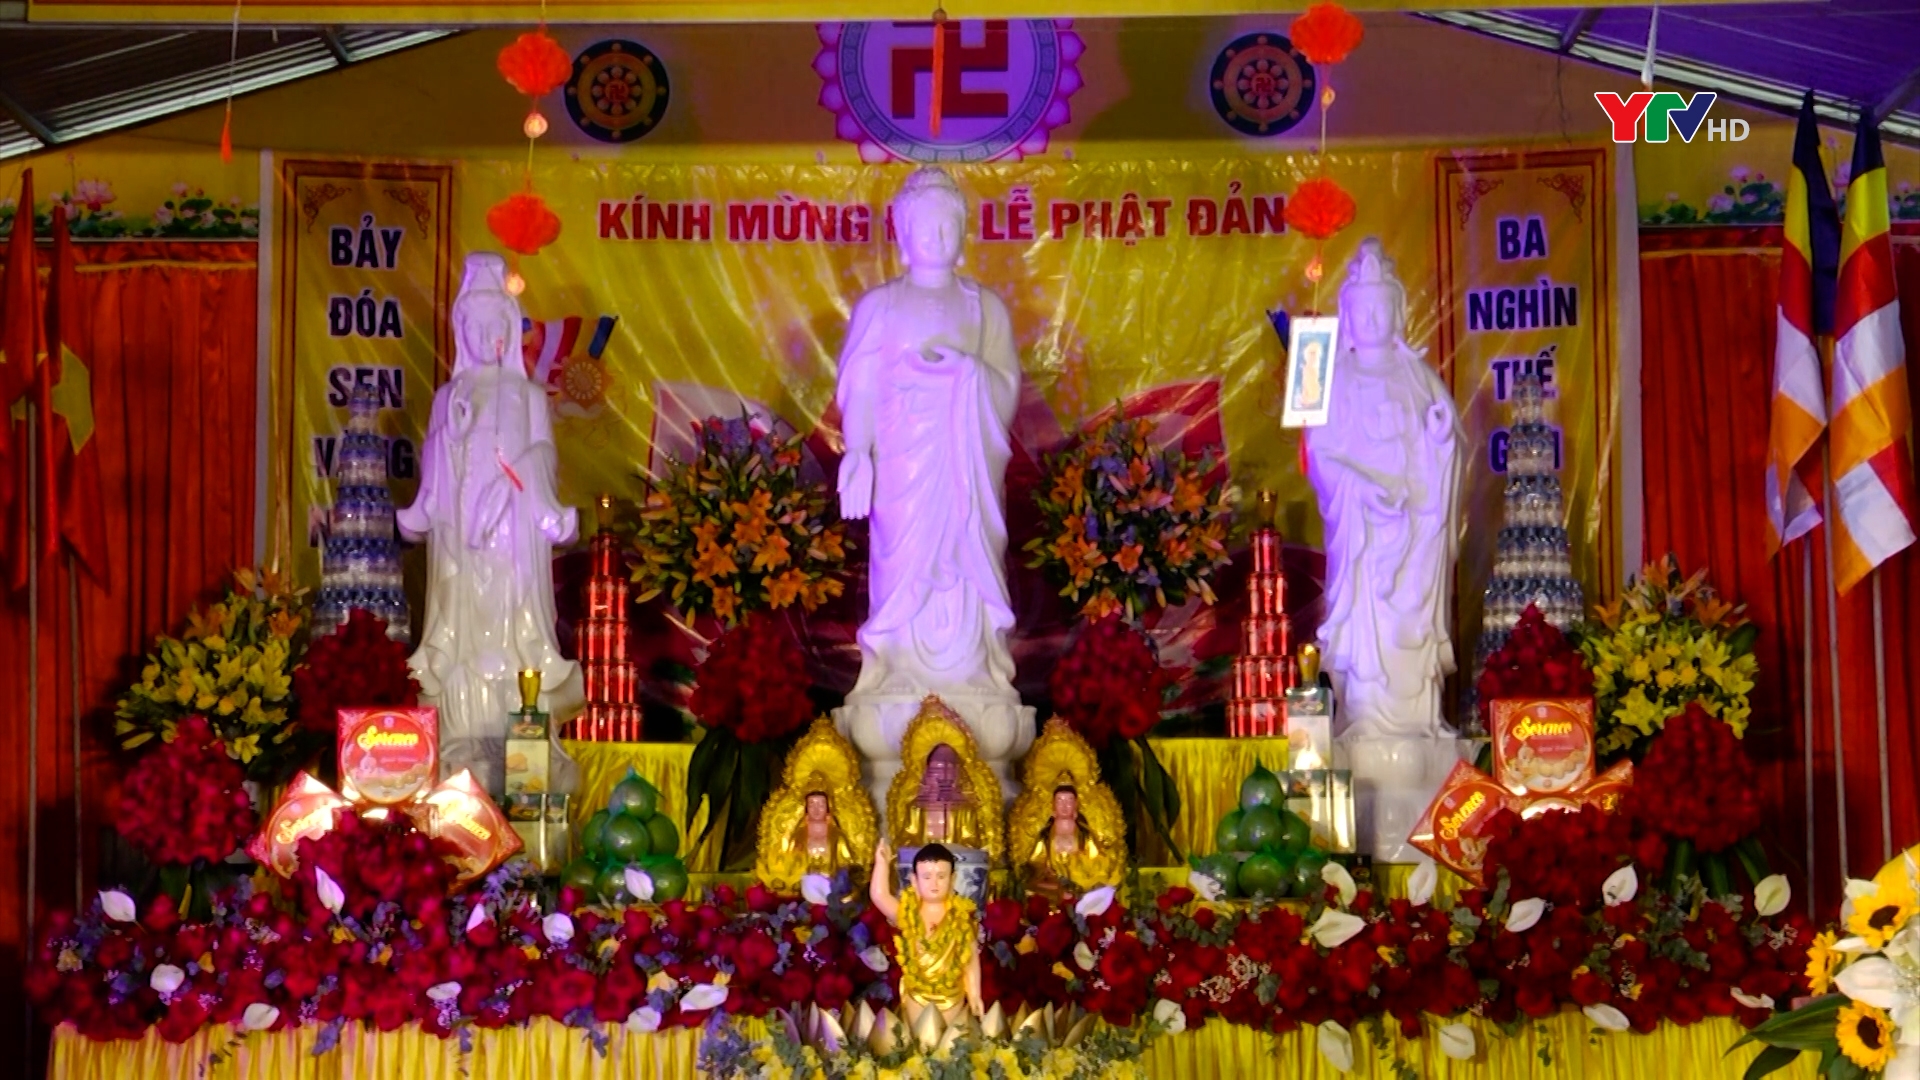 Chùa Minh Pháp, thành phố Yên Bái tổ chức Đại lễ Phật đản